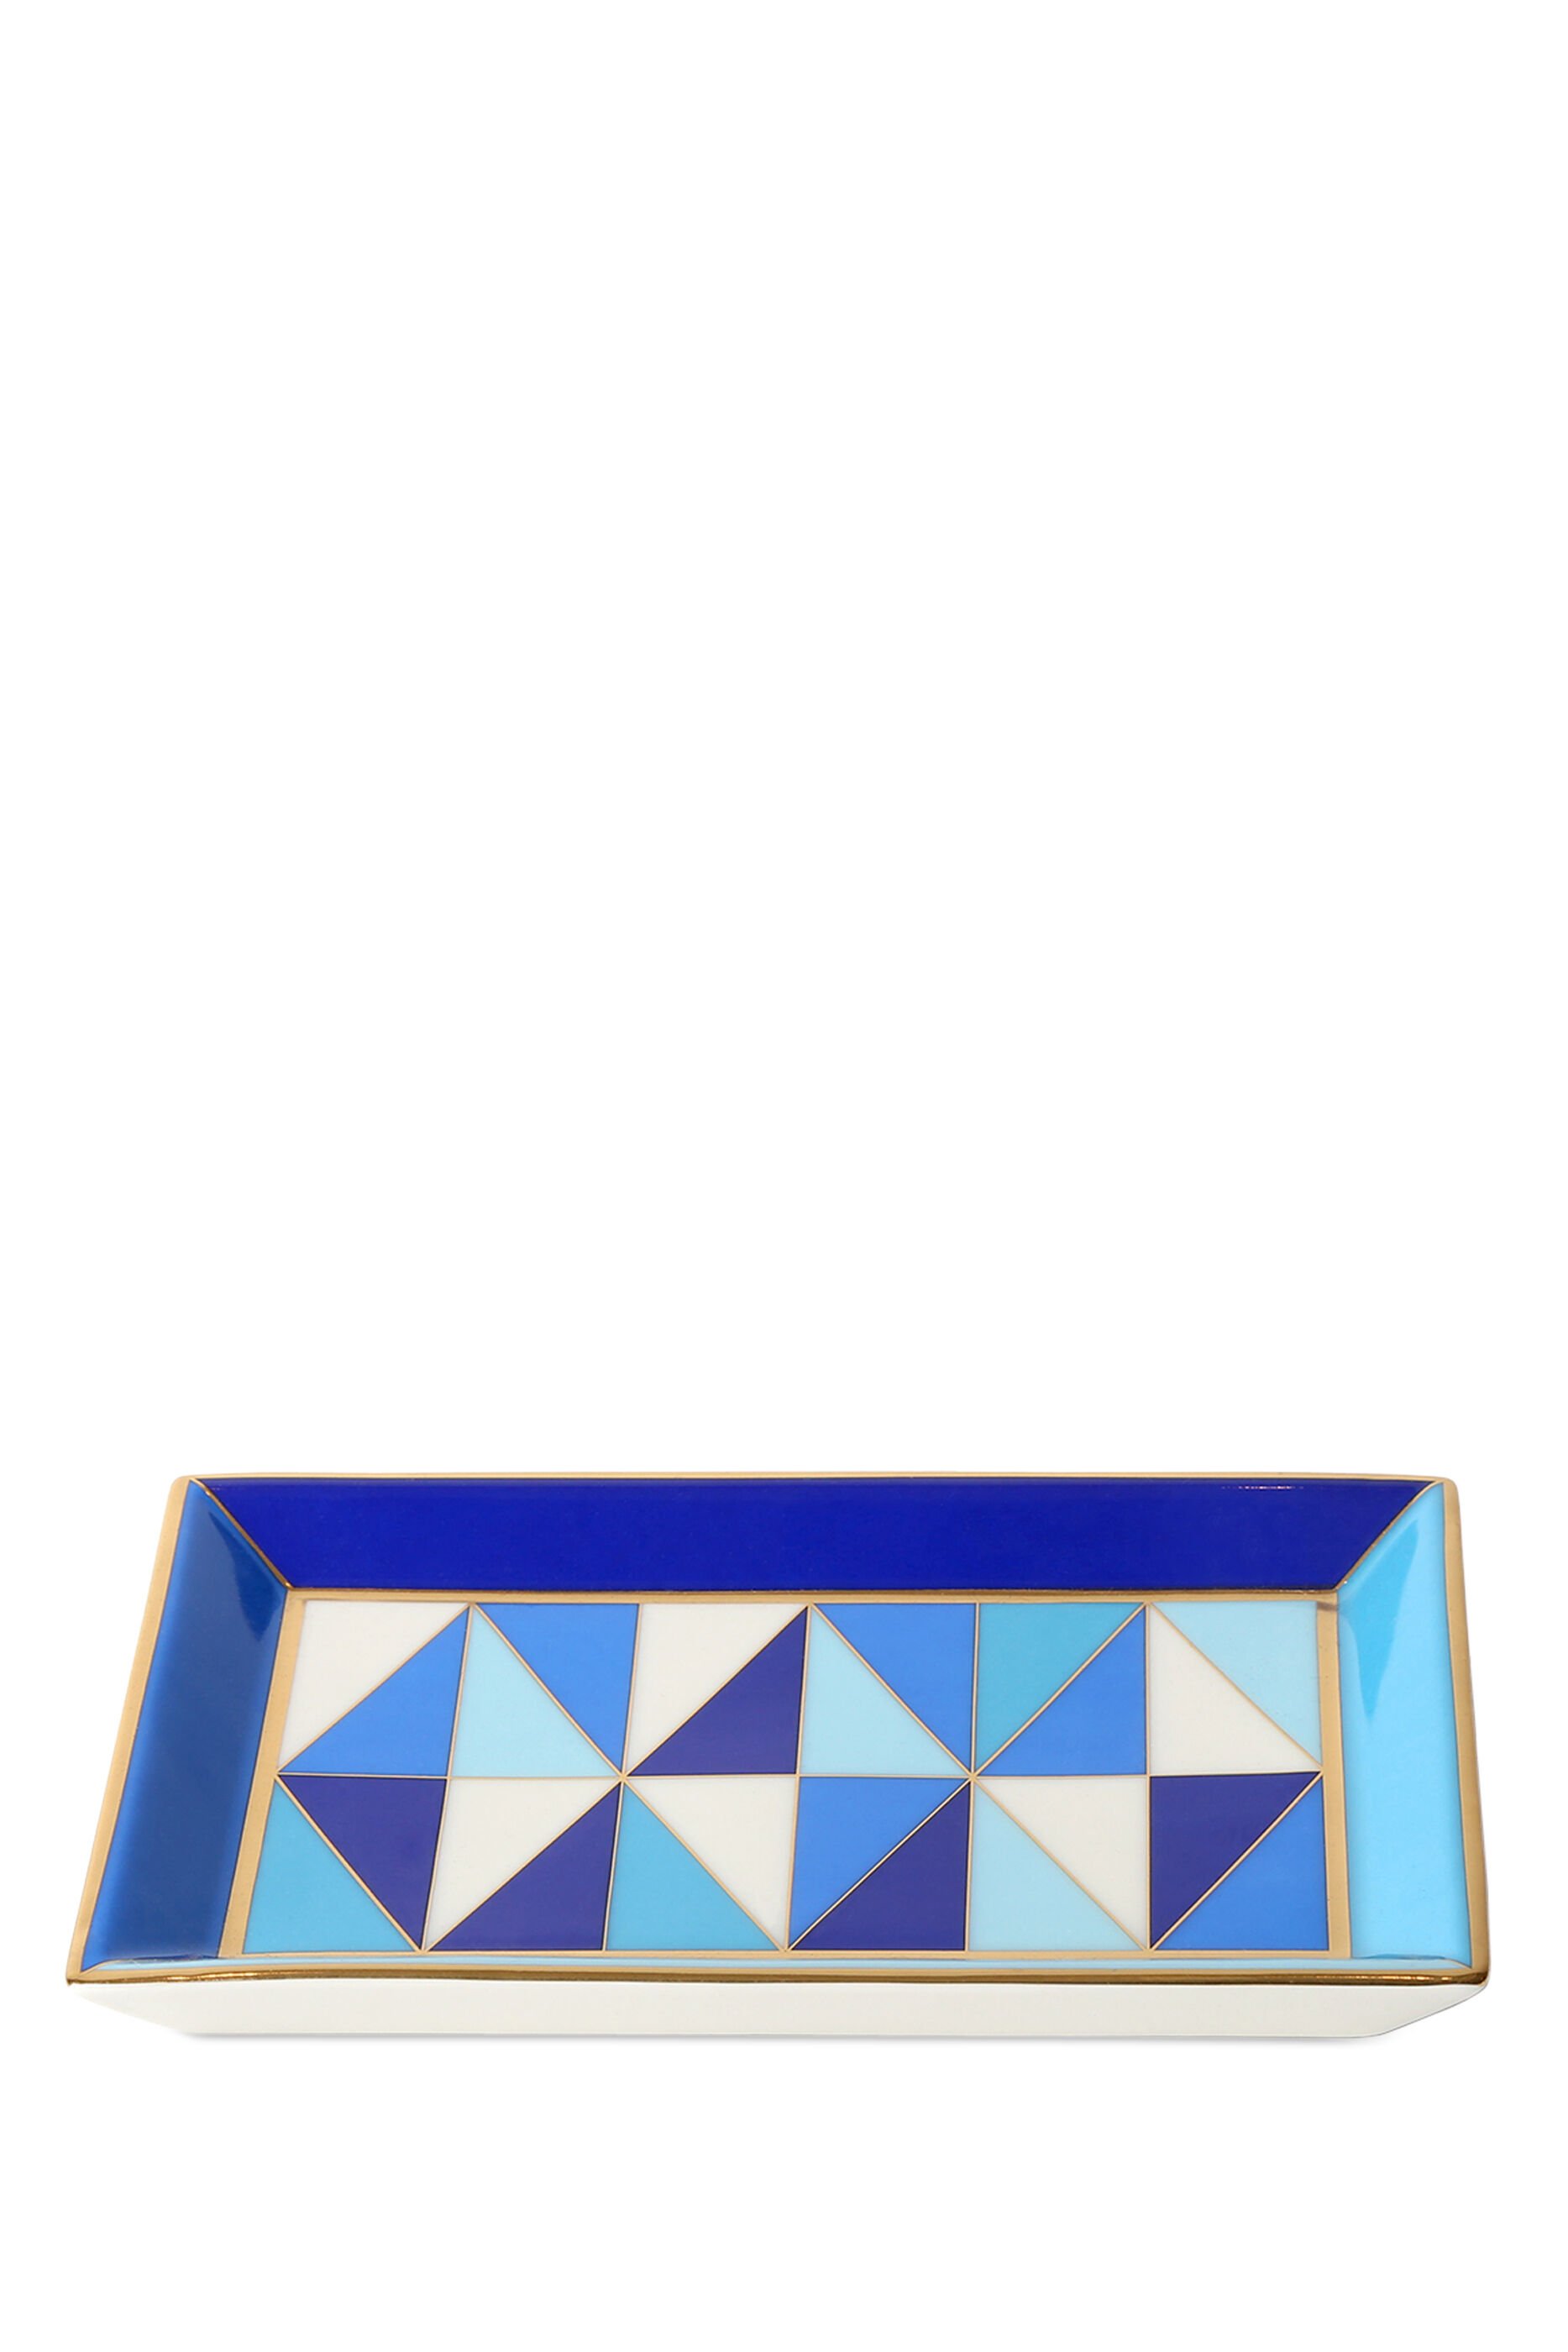 Buy Jonathan Adler Sorrento Rectangular Tray Multi-Color